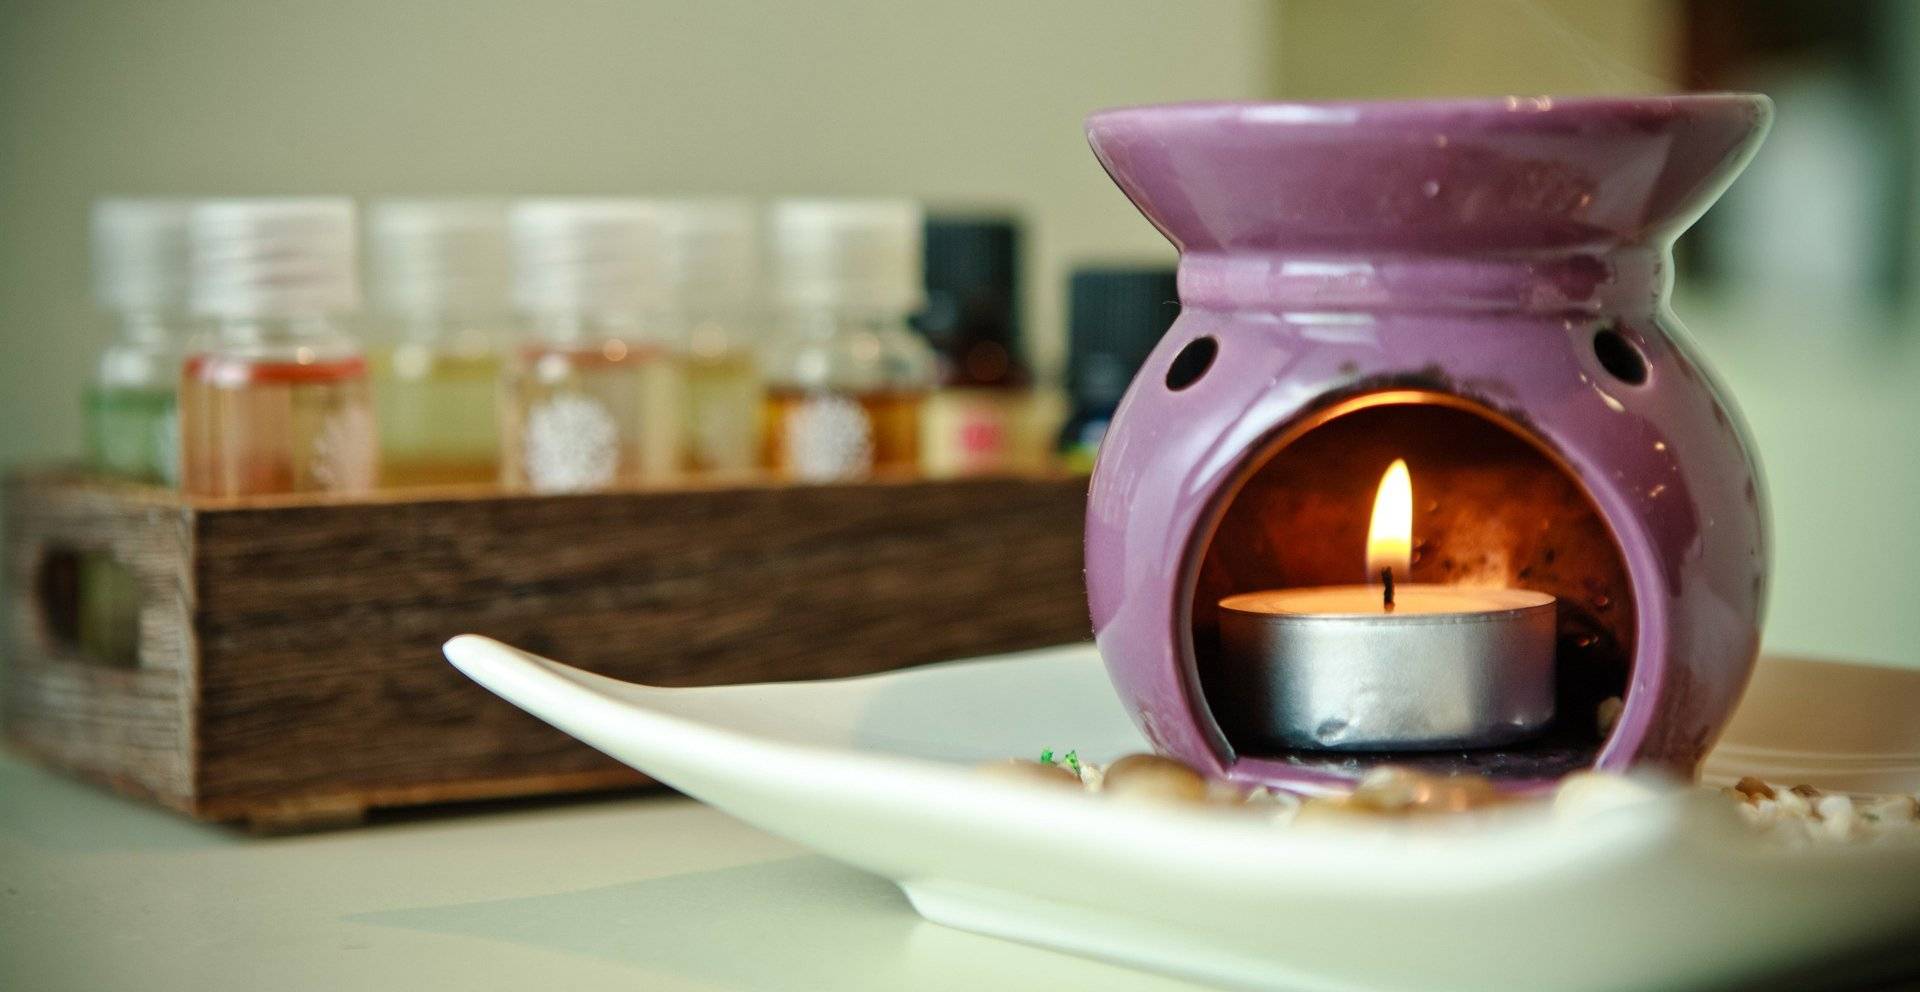 Чем пахнет ваш дом? интересные варианты арома-терапии для жилища